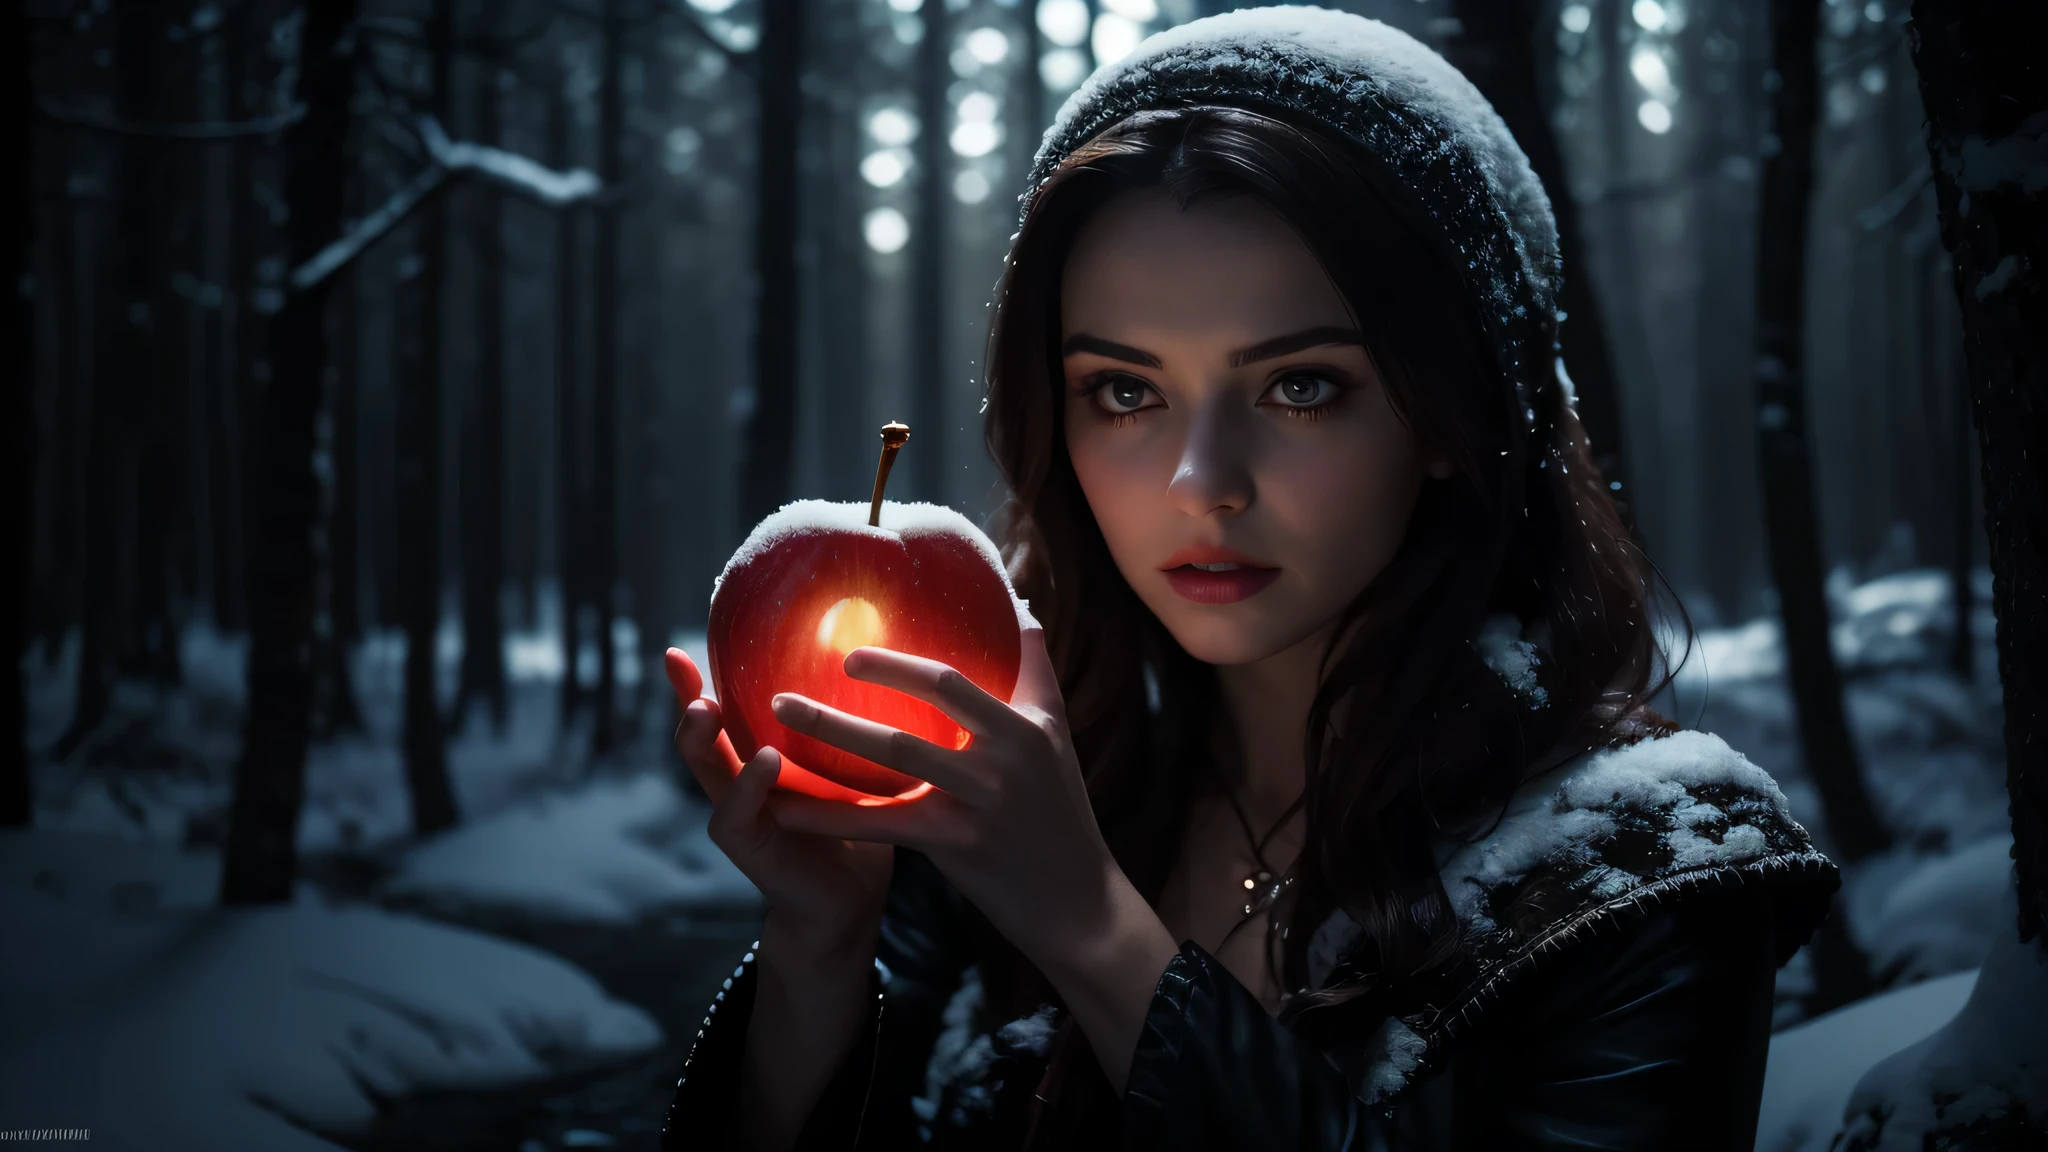 สโนว์ไวท์ยืนอยู่กลางป่าอันมืดมิด, ปกคลุมไปด้วยความมืดมิดและดราม่า. ชุดของเธอสะท้อนให้เห็นถึงแสงของแอปเปิ้ลเรืองแสงที่เธอถืออยู่ในมือ. ใบหน้าของเธอซีดยิ่งกว่าหิมะ, และดวงตาของเธอก็เปล่งประกายอย่างลึกลับในสภาพแวดล้อมที่มืดมิด, ผมสีแดงยาวสุดของเธอปลิวไปตามสายลม. แสงที่รุนแรงของแอปเปิ้ลอาบยาพิษส่องไปที่มือของสโนว์ไวท์, สร้างความตัดกันกับความมืดมิดของป่าไม้ที่อยู่รายรอบเธอ. ริมฝีปากของเธอแง้มเล็กน้อย, แสดงความโศกเศร้าและดราม่าถึงชะตากรรมที่เธอต้องเผชิญ., รายละเอียดสูง, ศิลปะแบบกอธิค, ความสมจริง, แสงภาพยนตร์, ความชัดลึก, แสงที่เร่าร้อน, คุณภาพดีที่สุด, ความสูง, ยูเอชดี, ผลงานชิ้นเอก